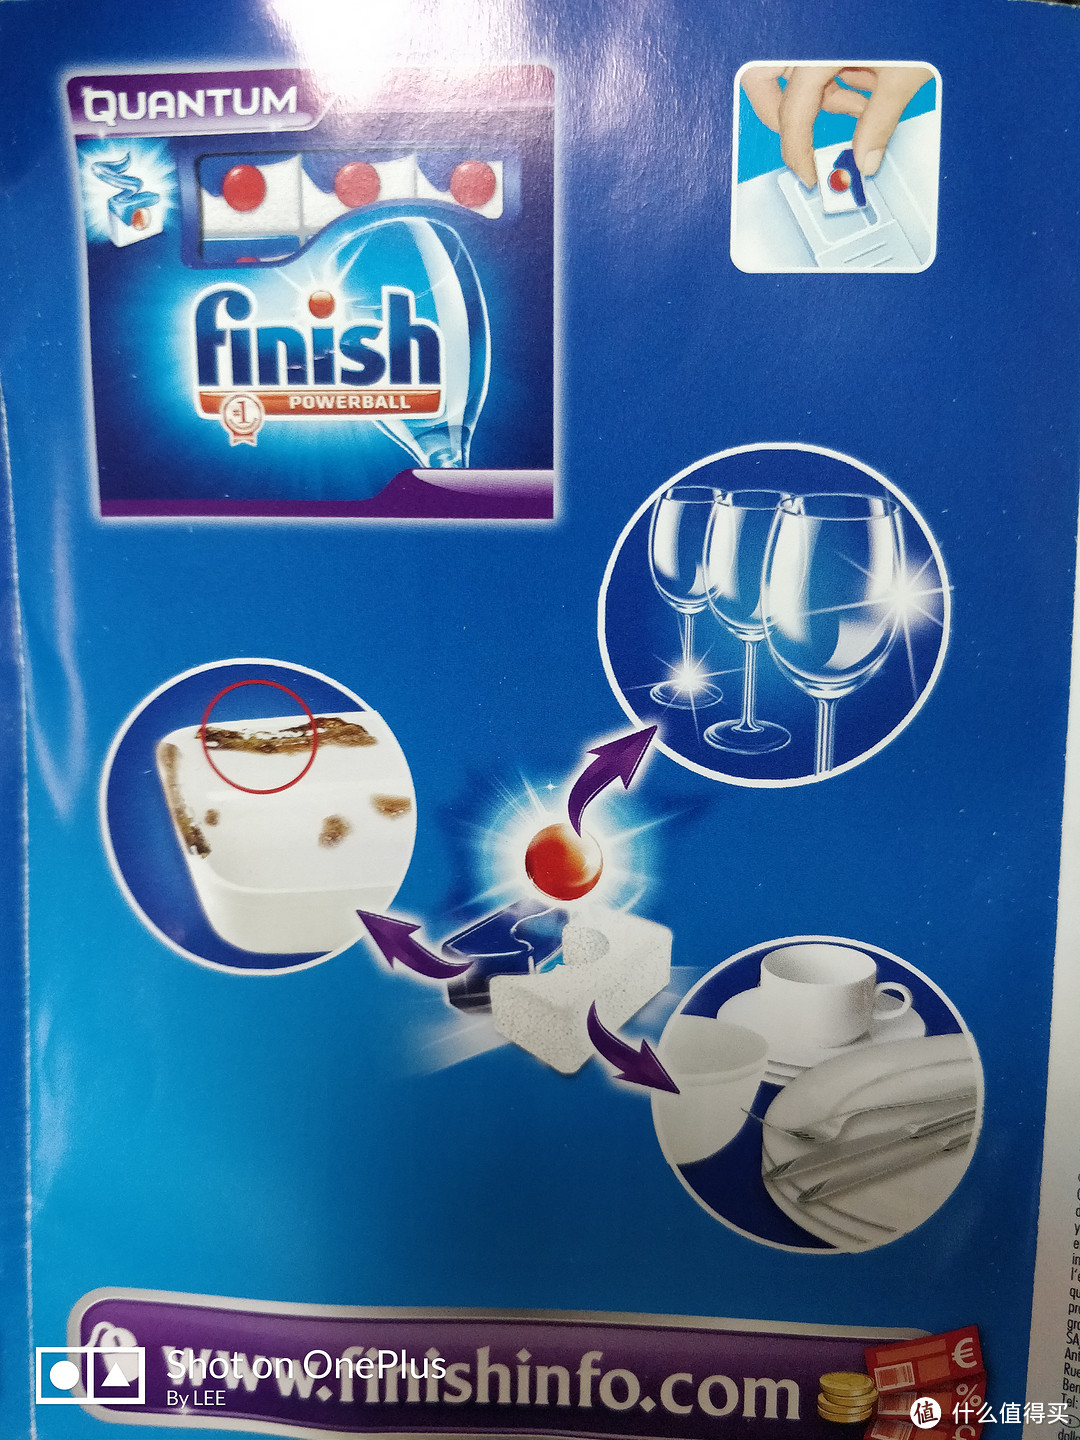 成分，白色的用于清洗，蓝色的是去除重污渍，红色的是光亮剂。